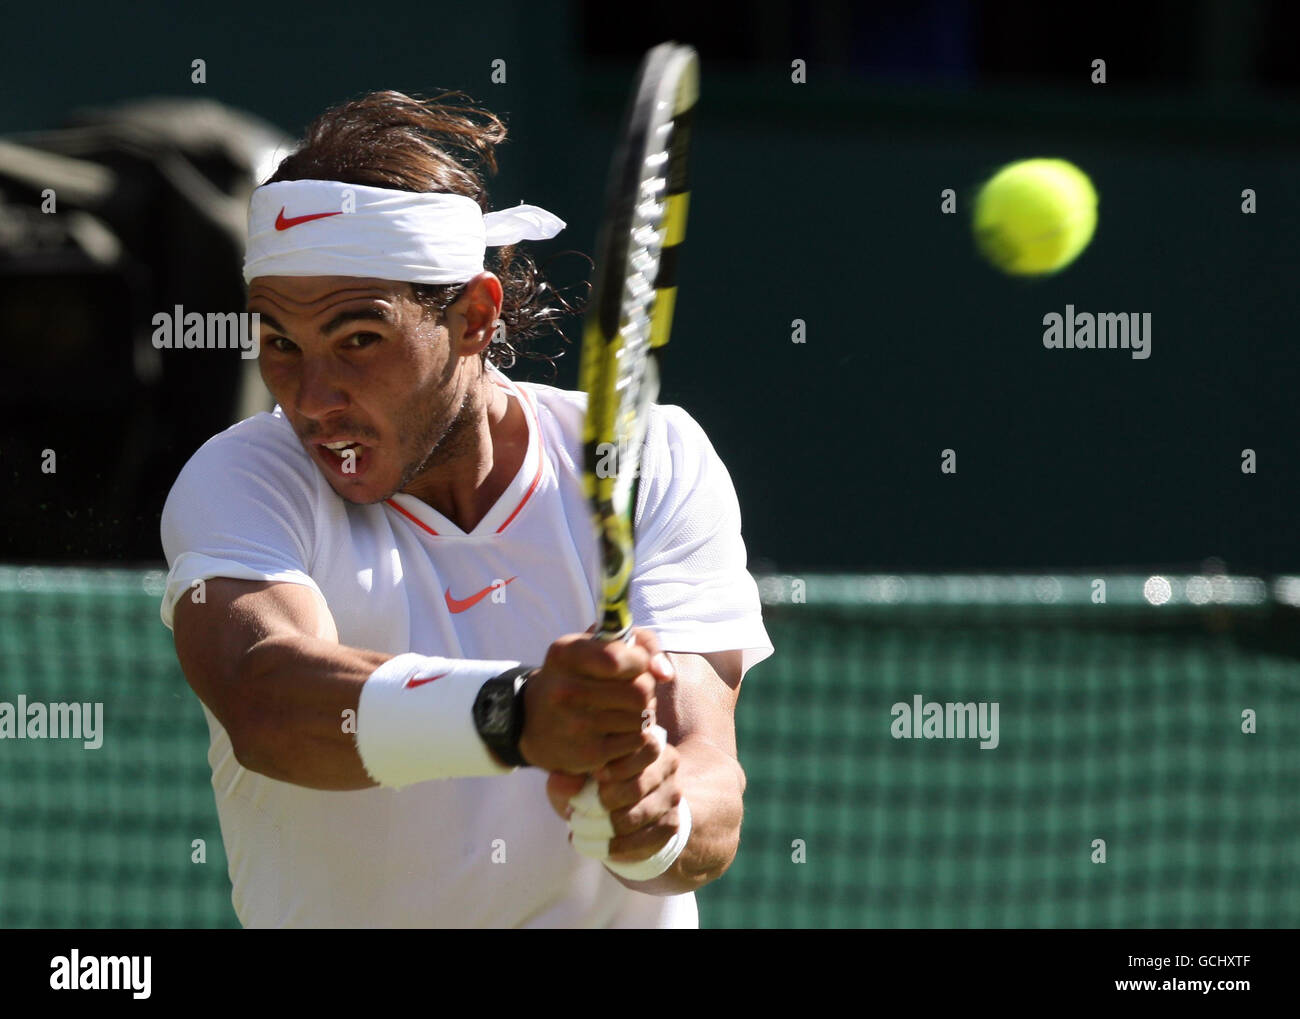 Am zweiten Tag der Wimbledon Championships 2010 im All England Lawn Tennis Club, Wimbledon, ist der Spanier Rafael Nadal im Einsatz gegen den japanischen Kei Nishikori. Stockfoto